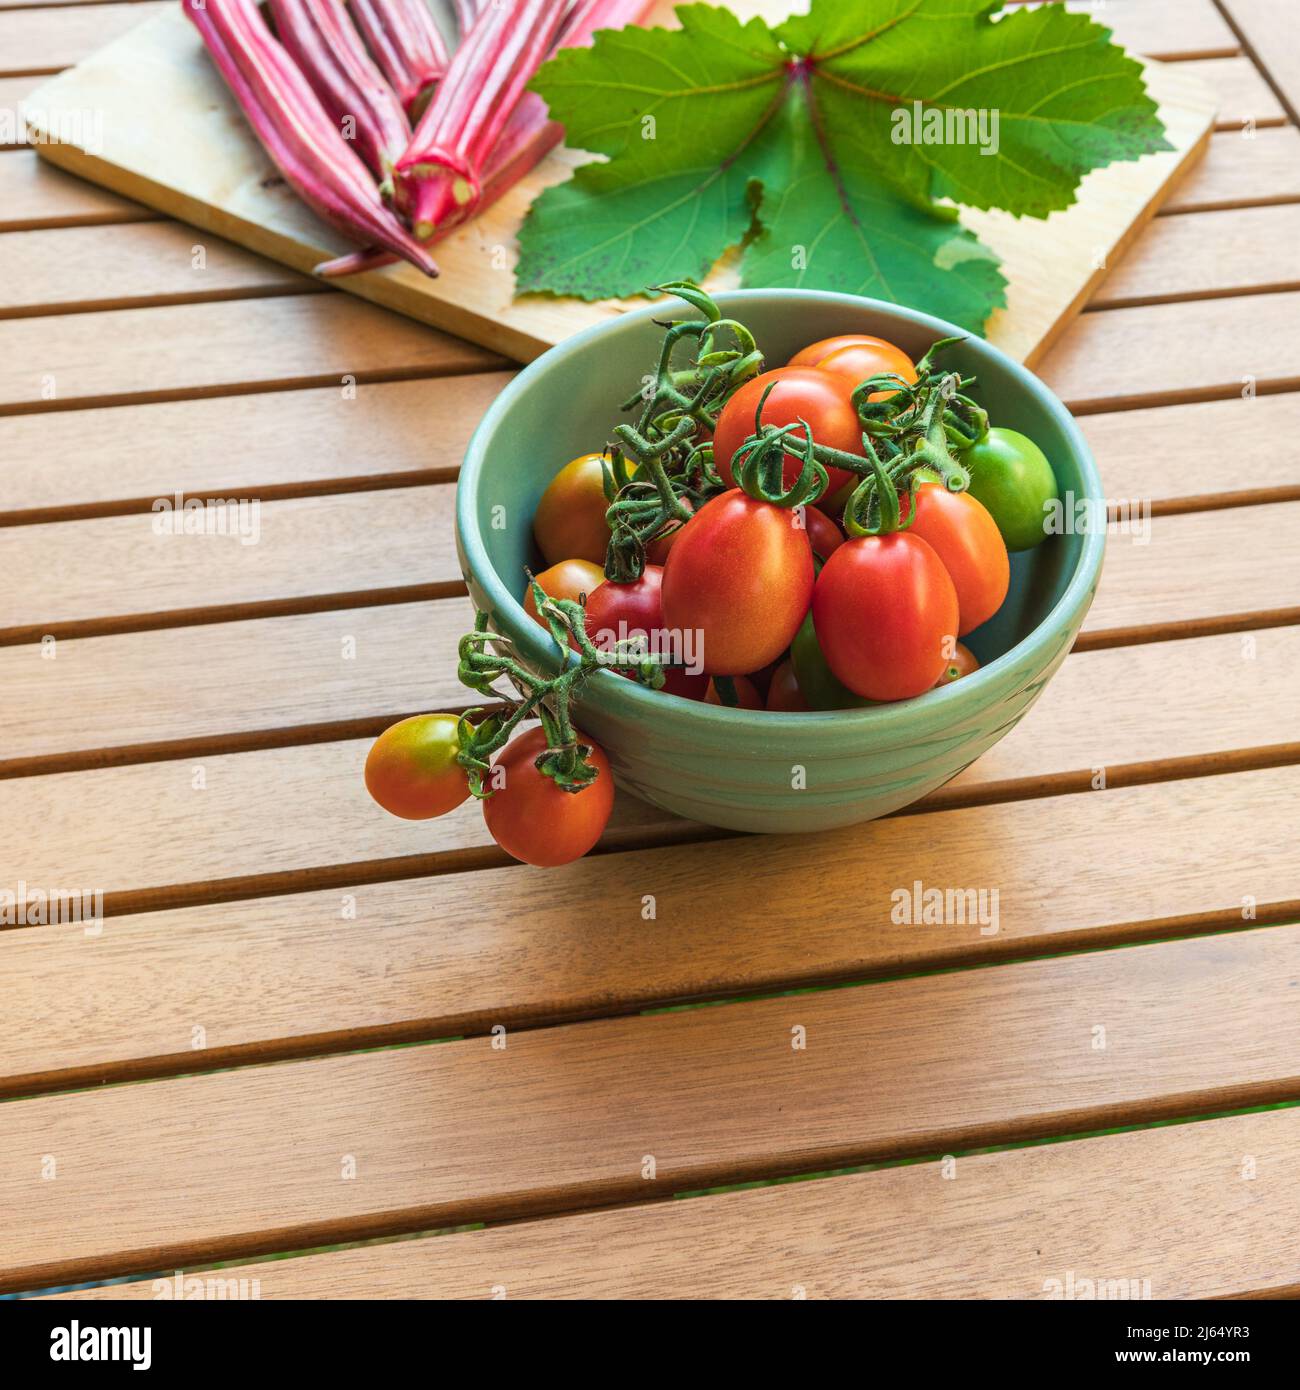 Grappoli d’InInverno, pomodori da uve invernali freschi e cialde di okra all’arancia Jing su un tavolo esterno con spazio per la copia Foto Stock